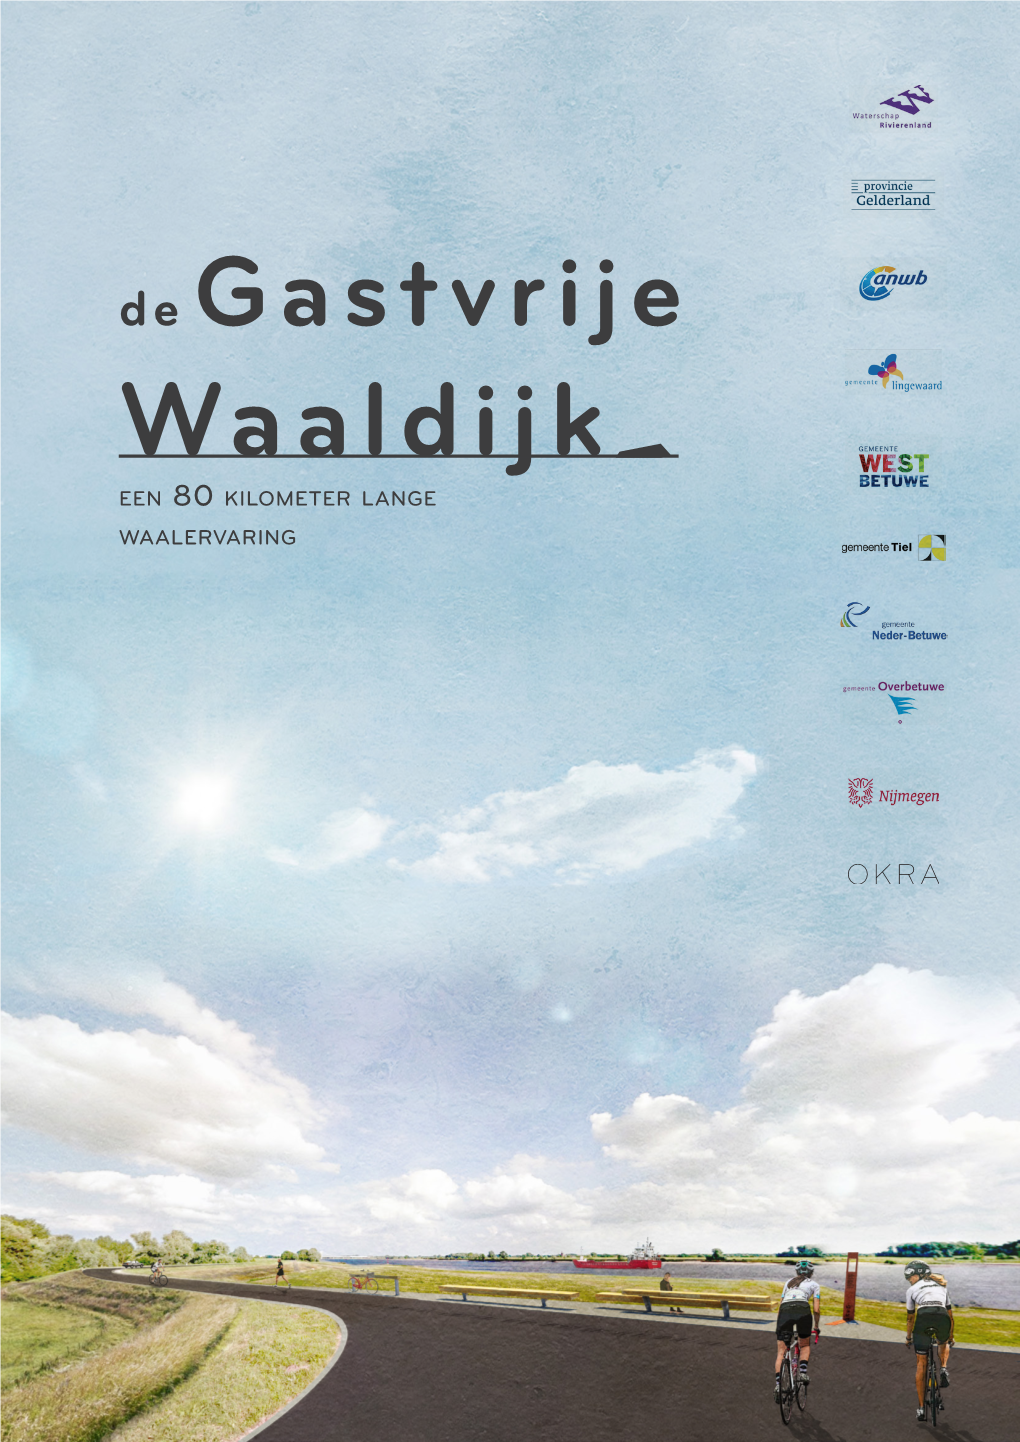 De Gastvrije Waaldijk Een 80 Kilometer Lange Waalervaring 2 OKRA 18-086 | MASTERPLAN GASTVRIJE WAALDIJK